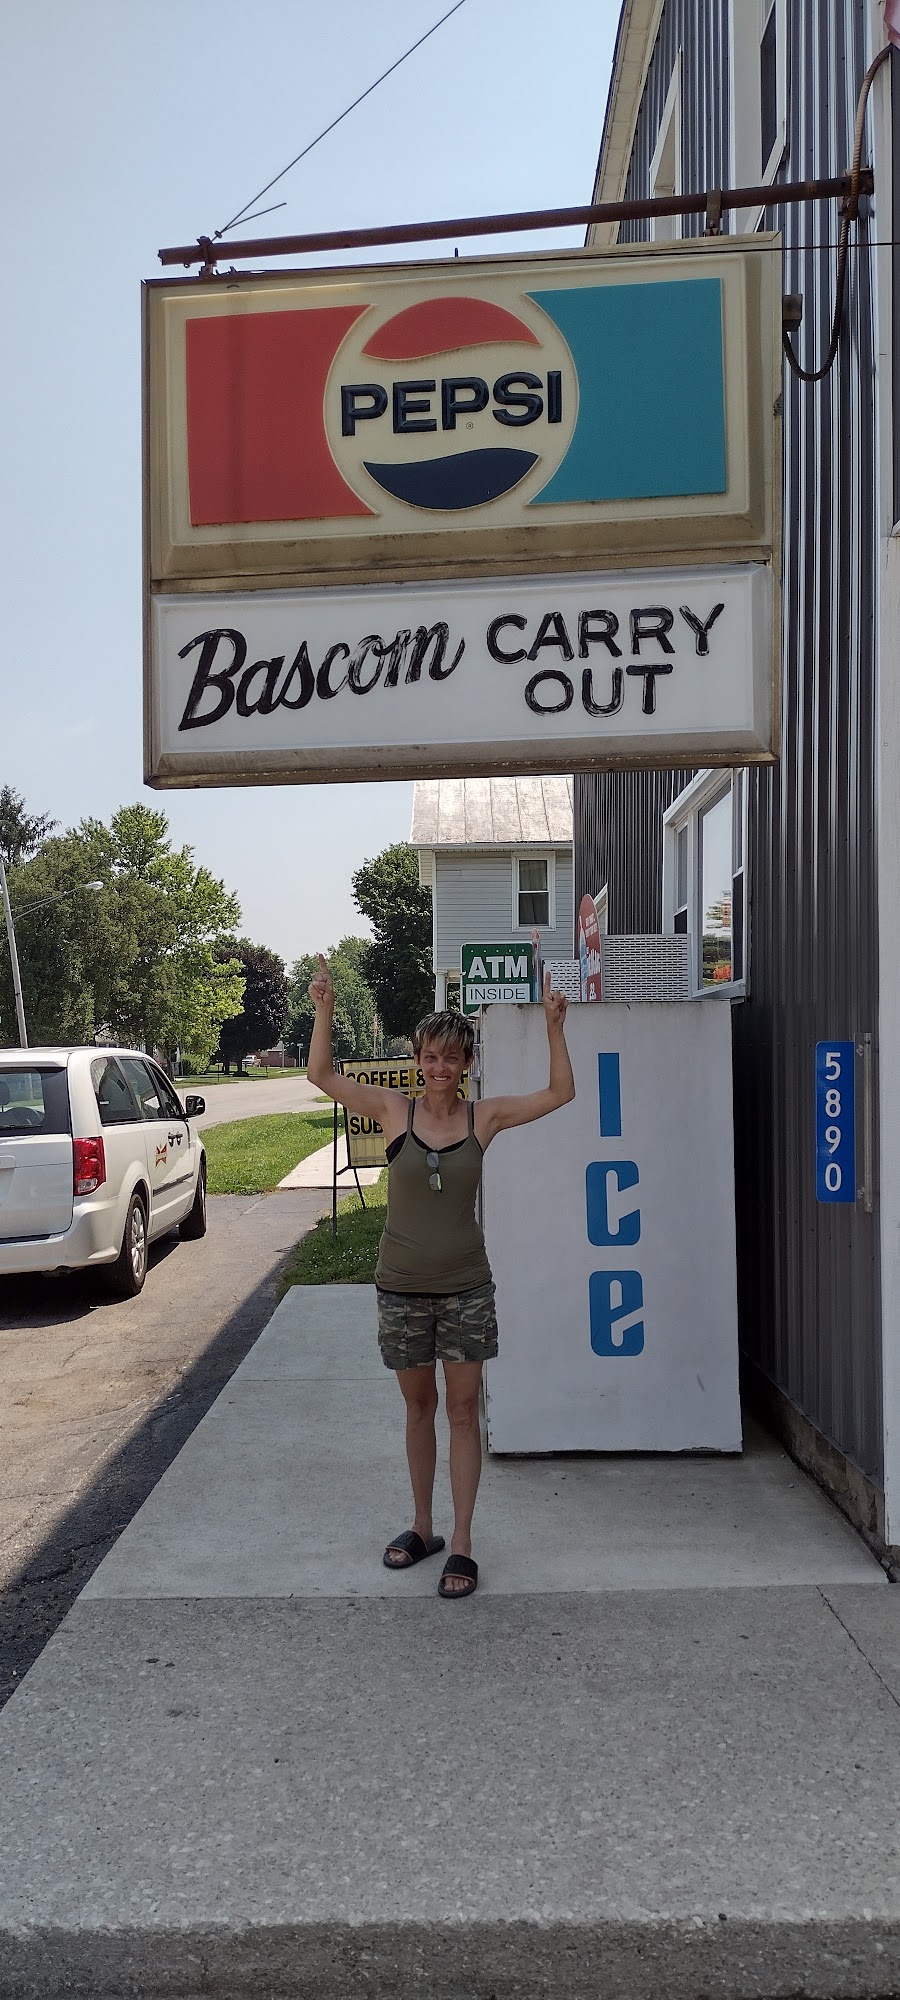 Bascom Carry Out